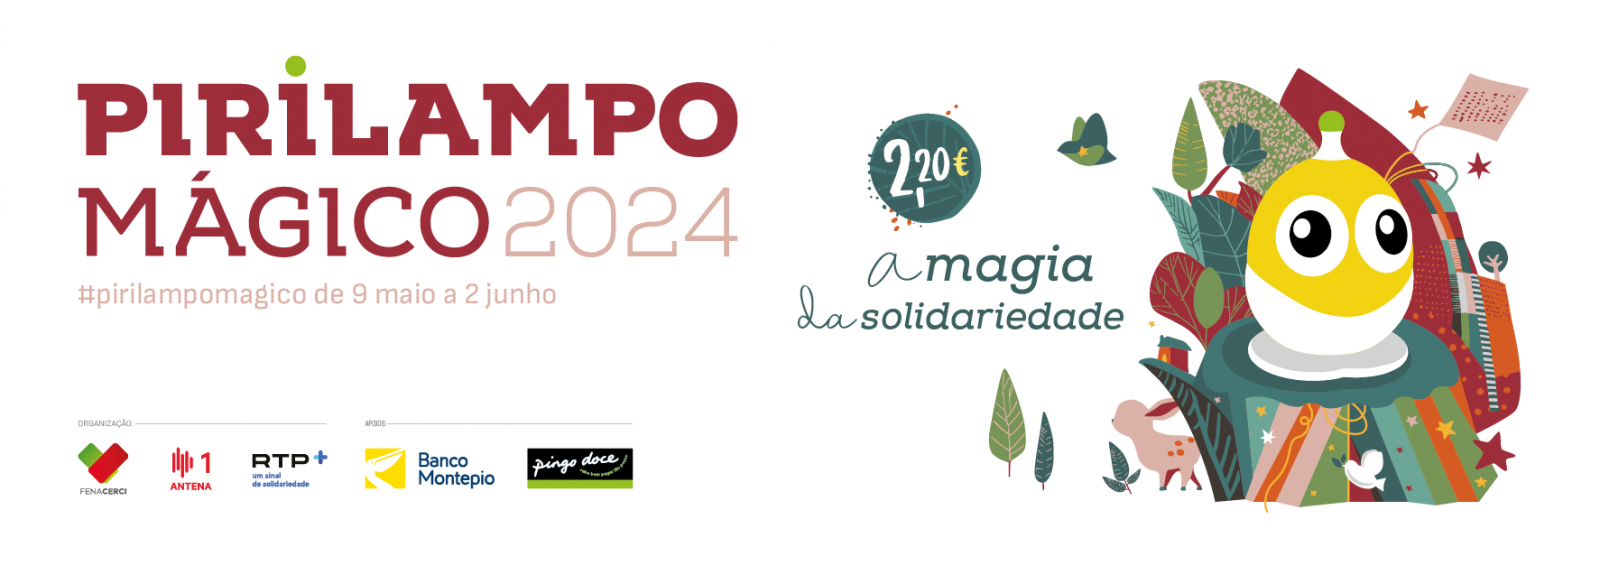 Pirilampo Mágico 2024 - De 09/05 a 02/06!